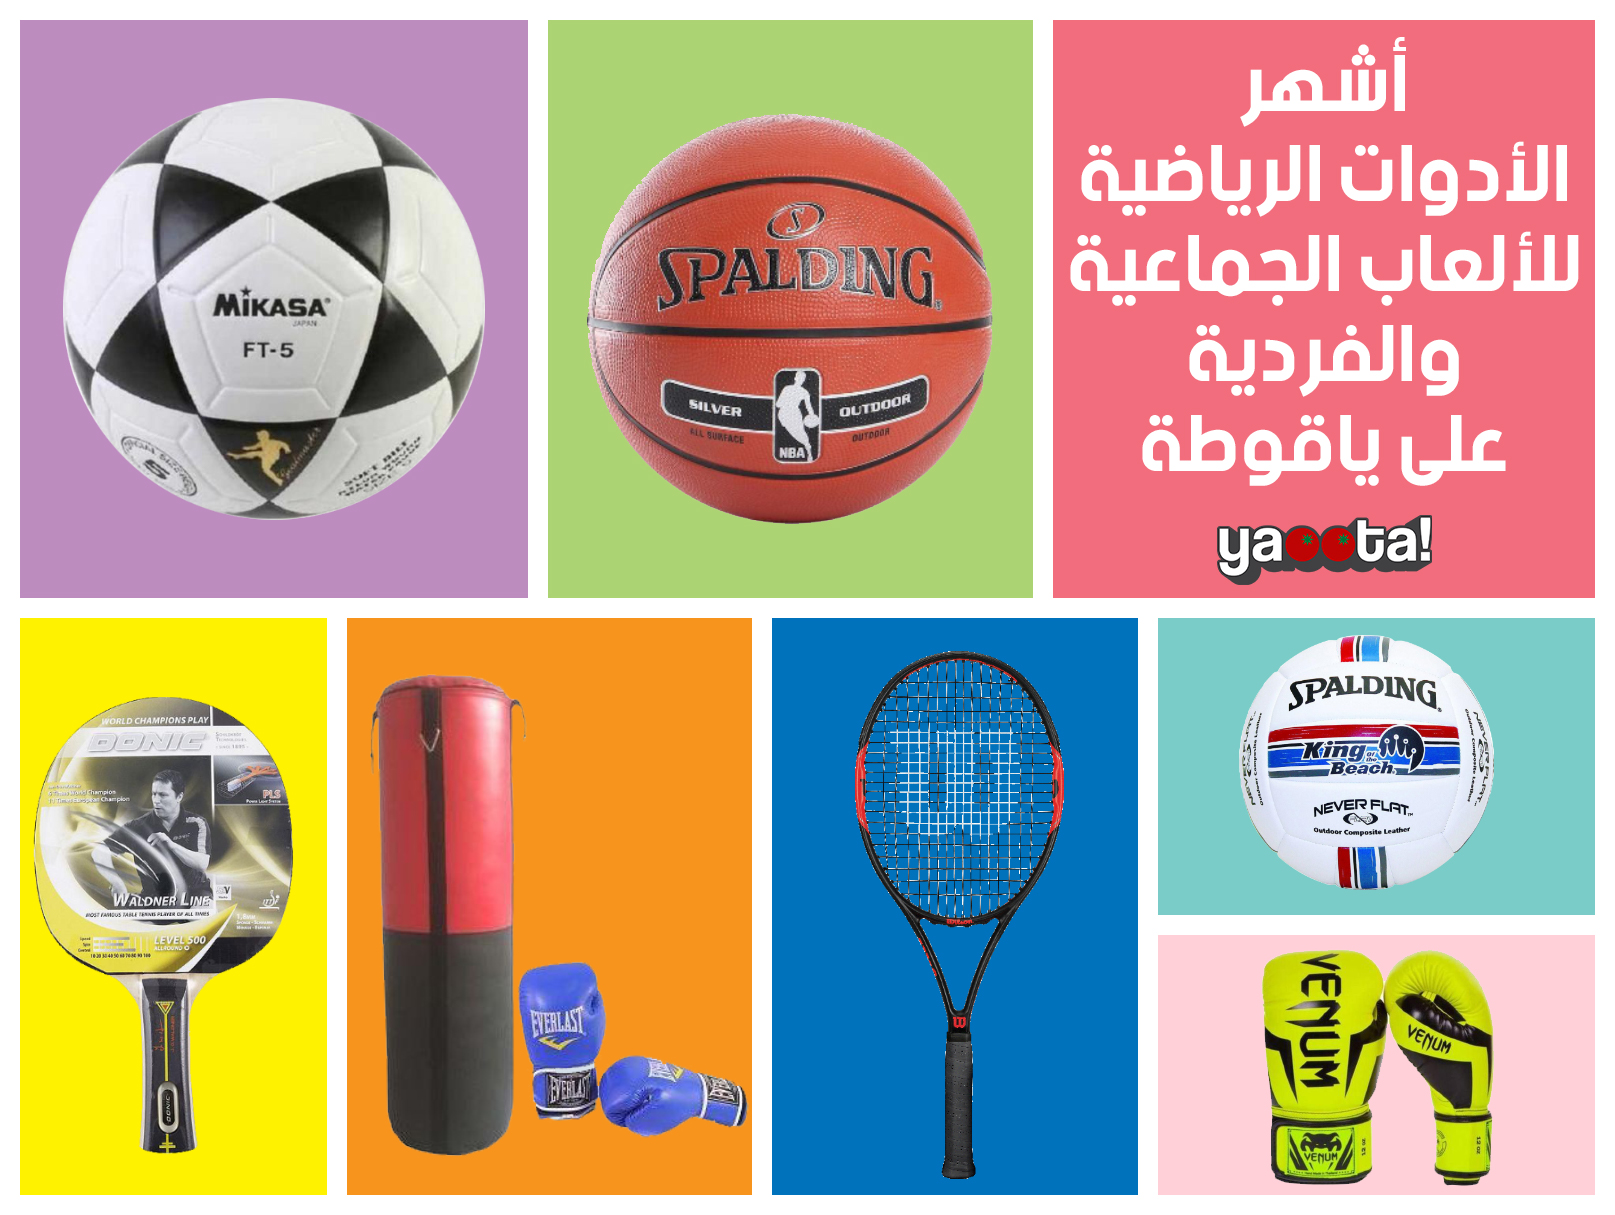 اتعرف على أبرز الأدوات الرياضية الخاصة بالرياضات الجماعية والفرديةOnline  Shopping Egypt | Yaoota! Magazine